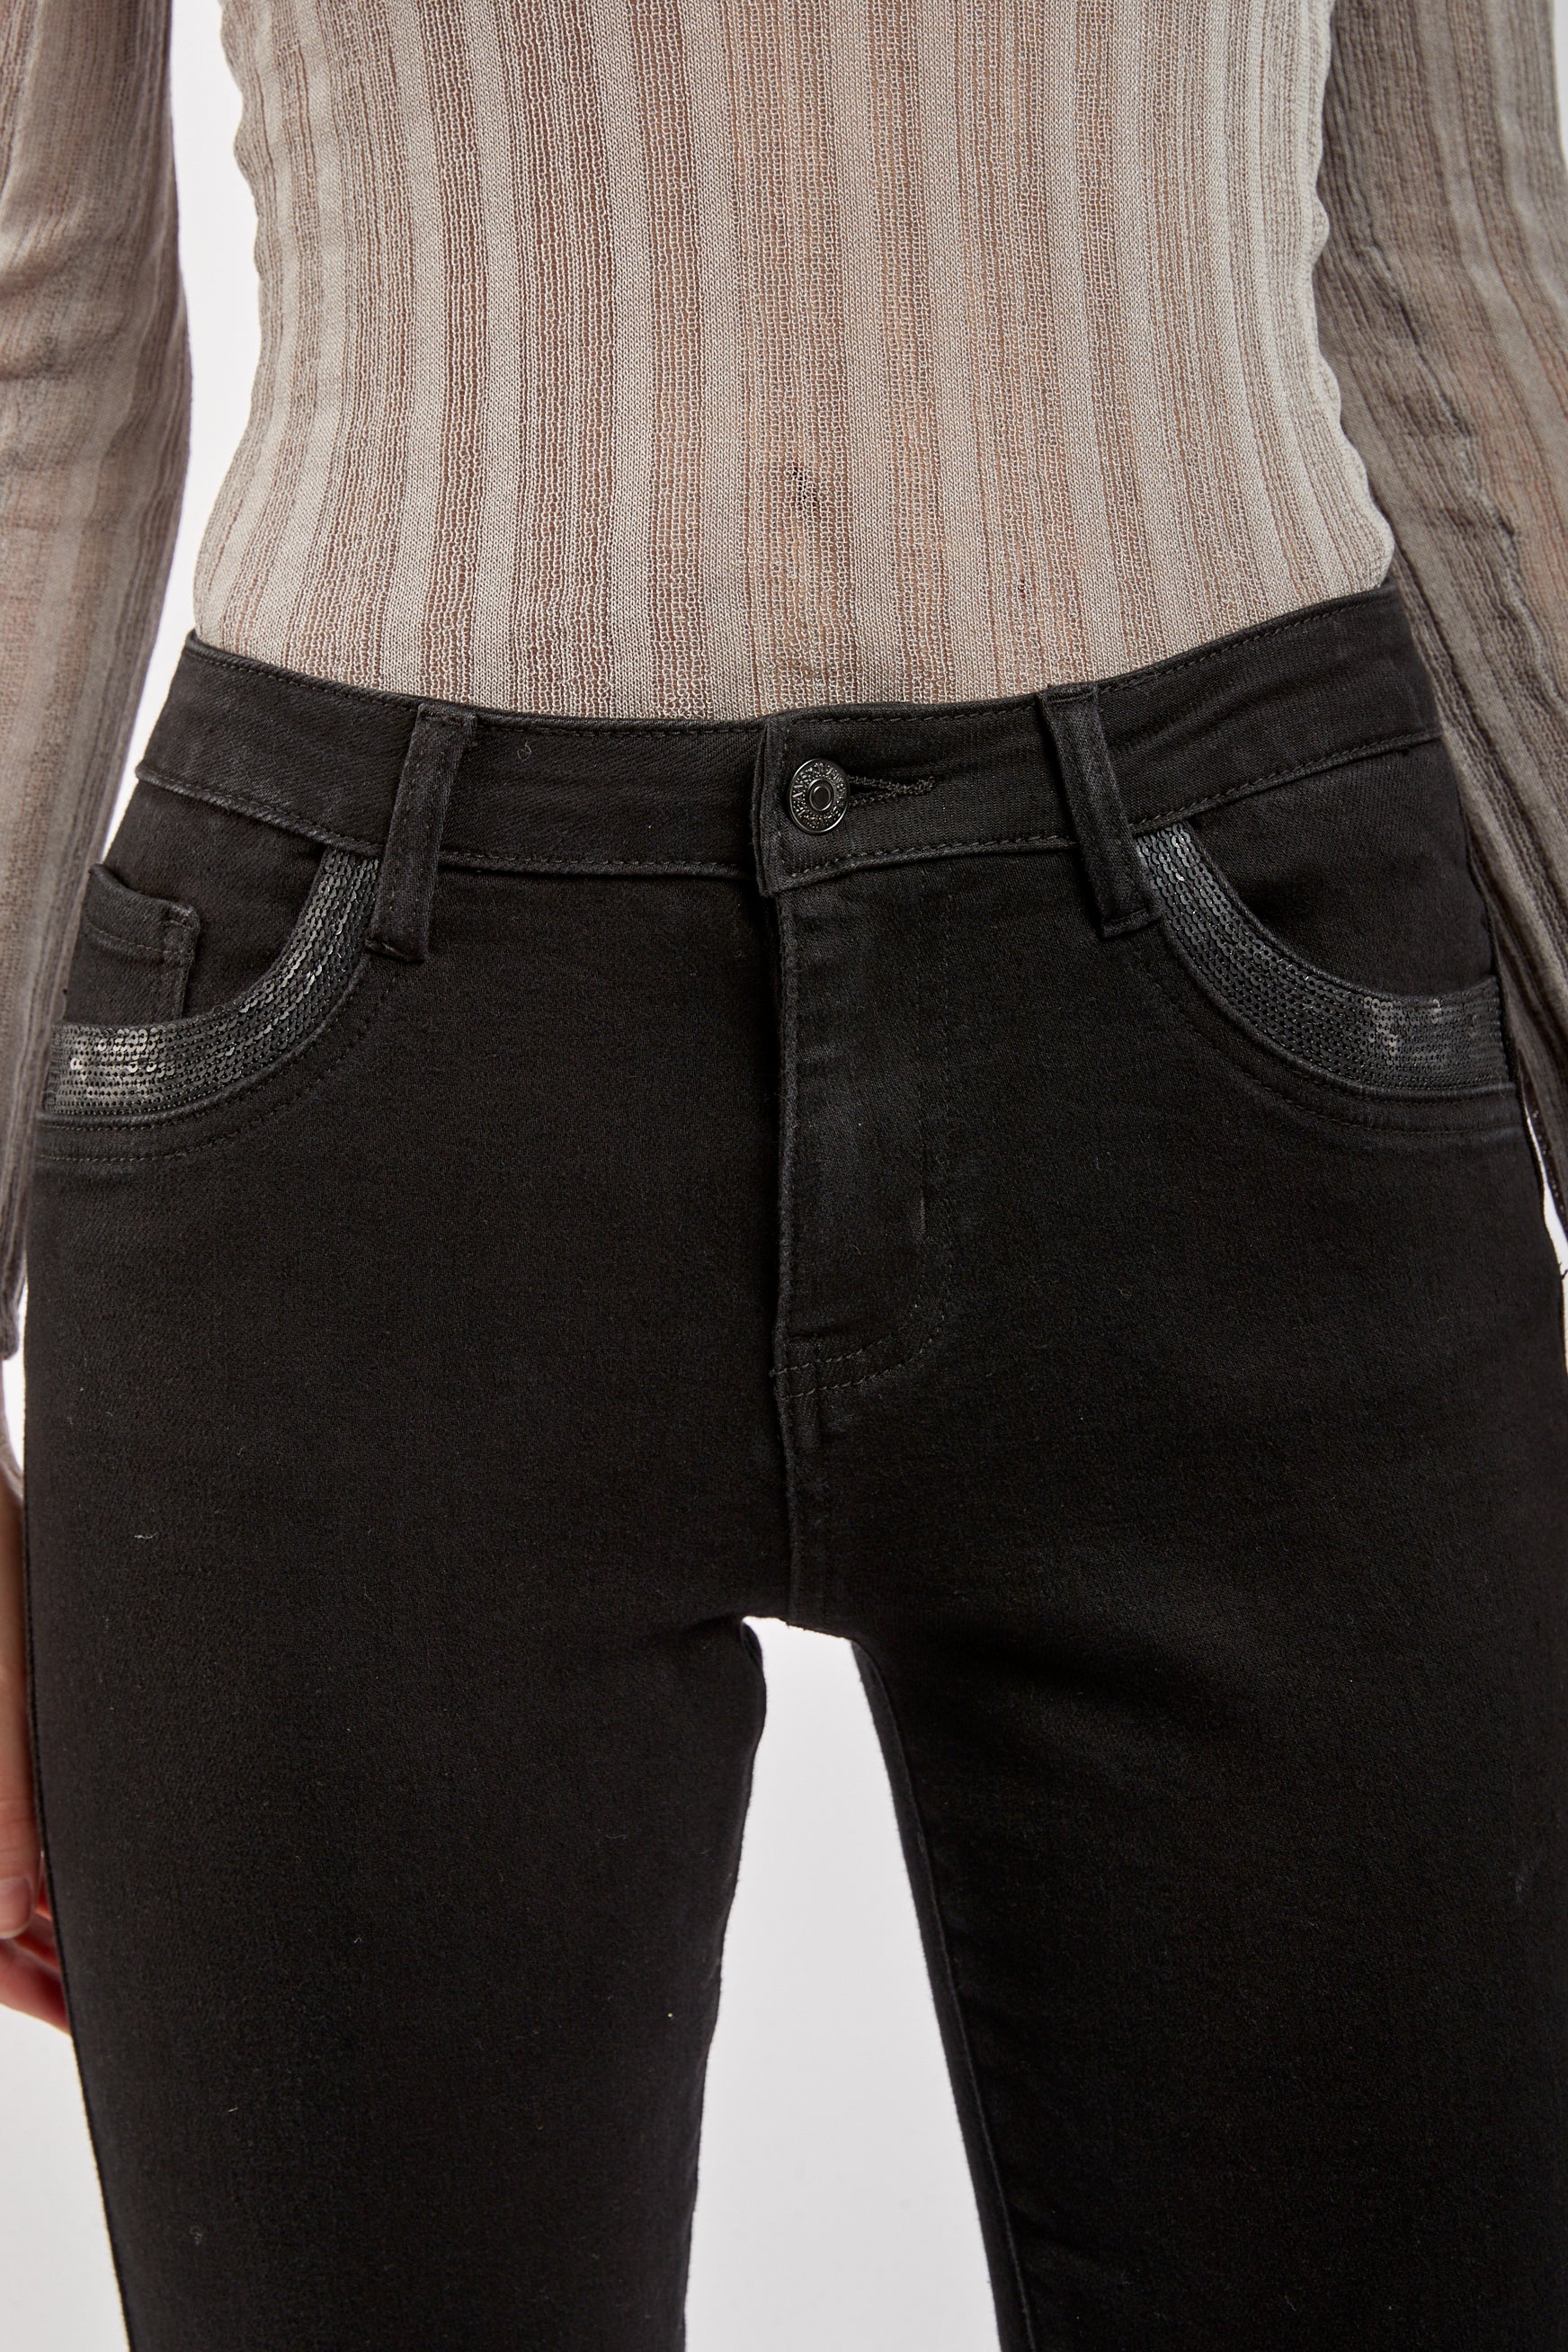 Pants Detail Sequins Pocket - Juju